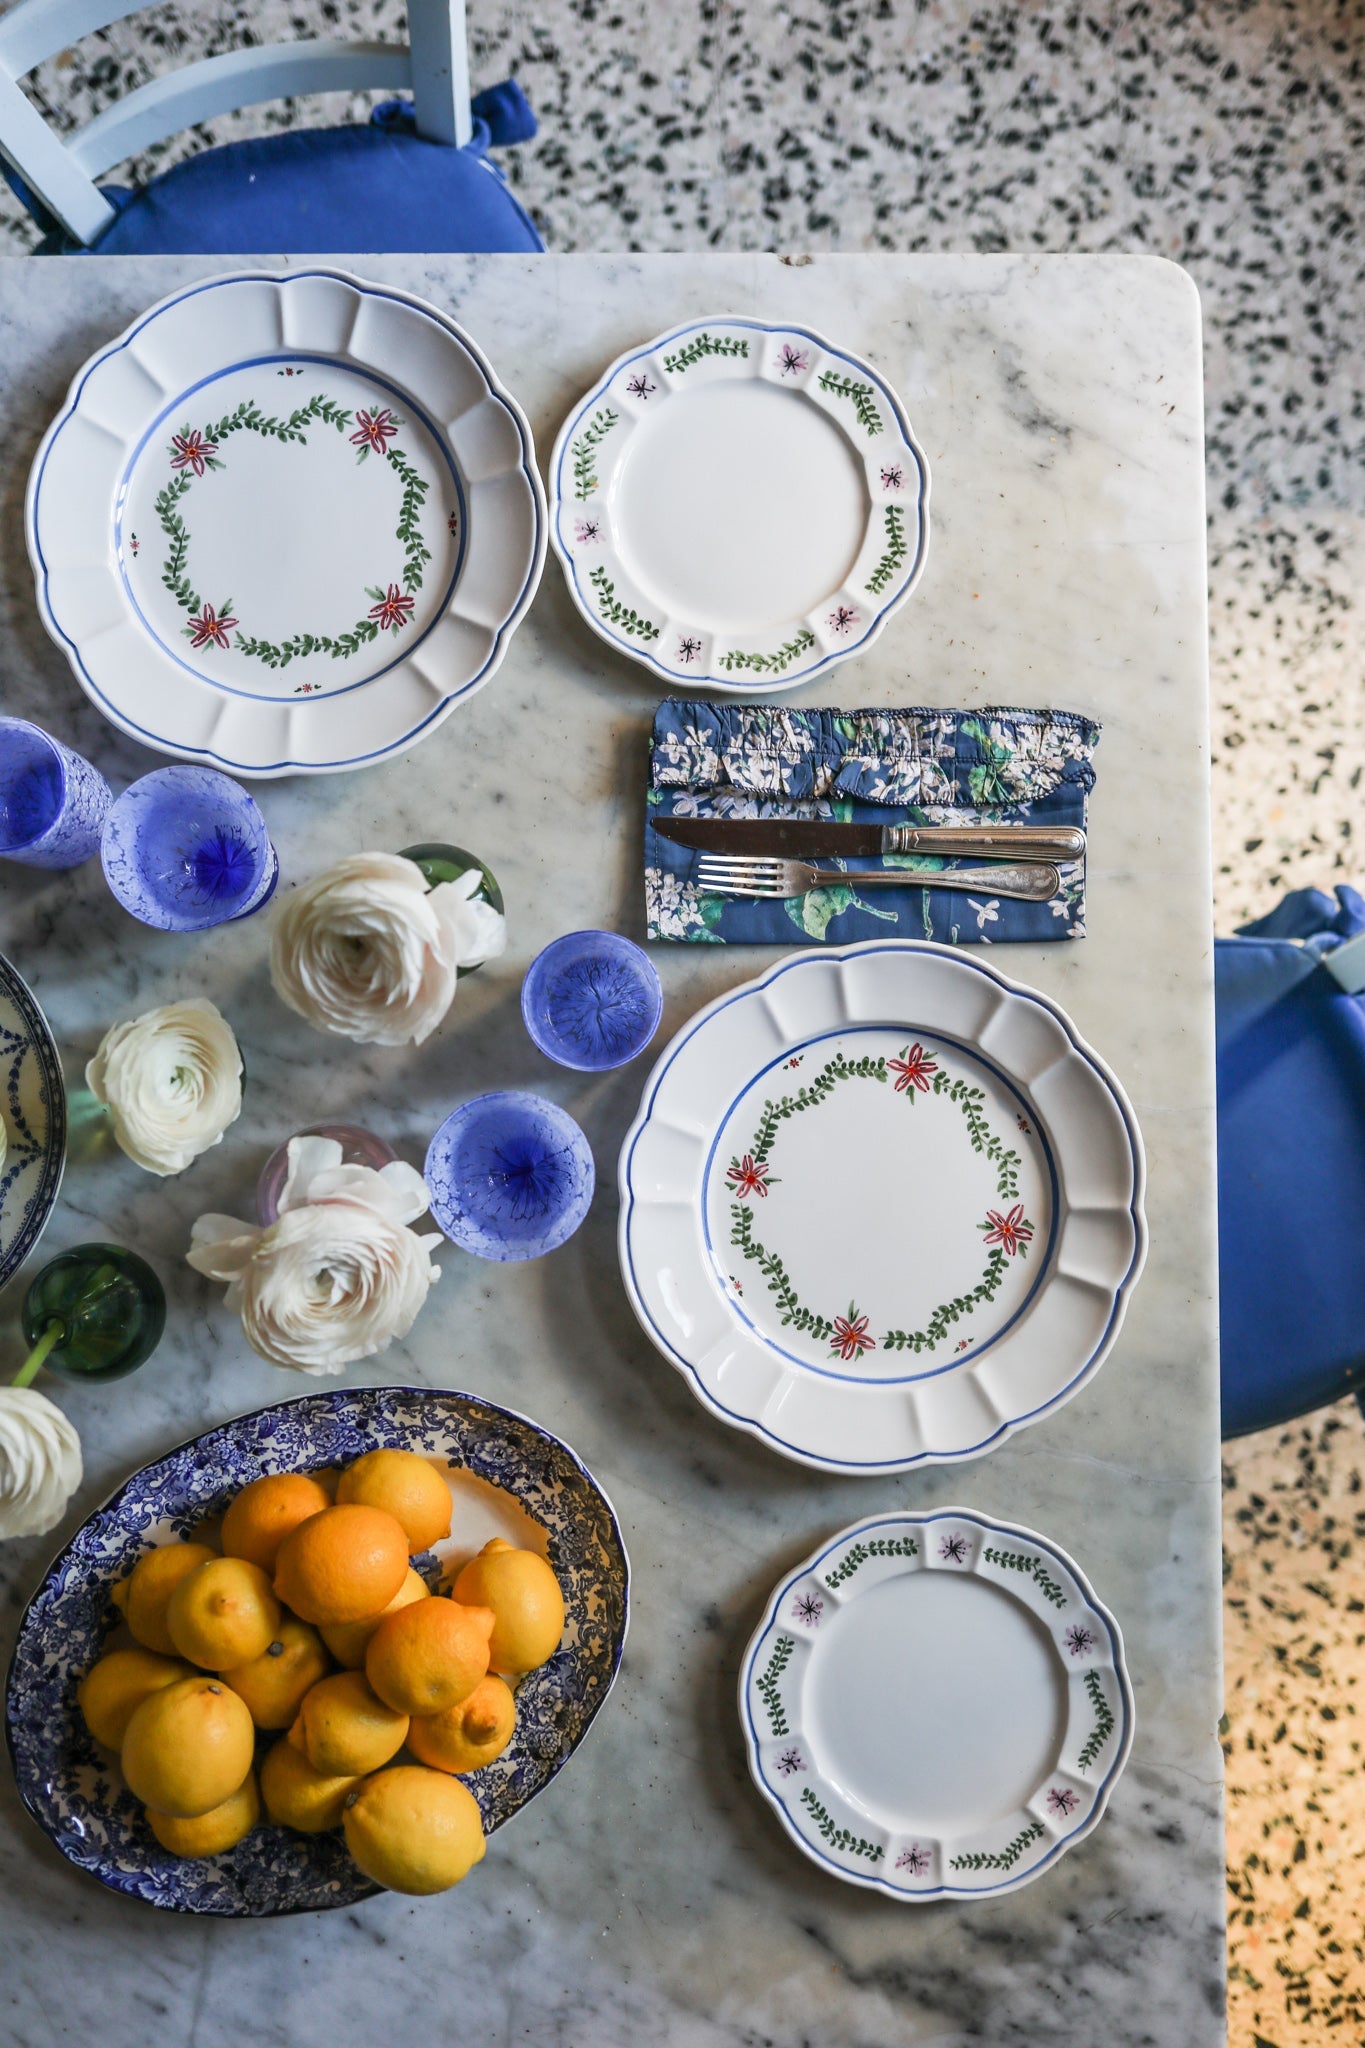 Arcadia Dinner Plate, Blue - Skye McAlpine Tavola